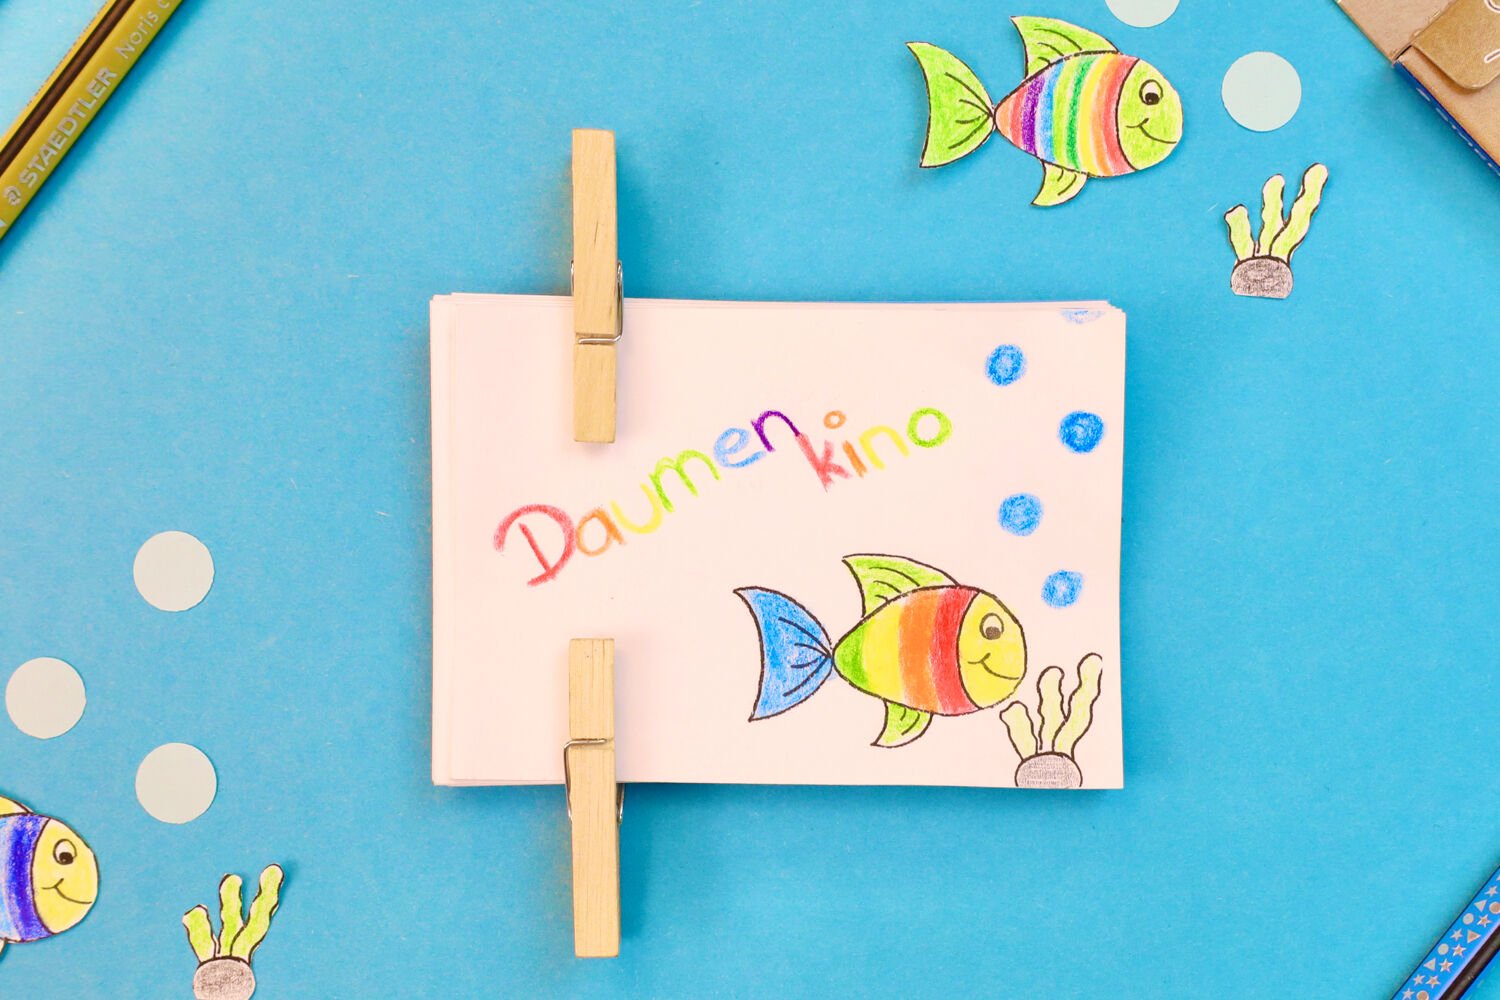 Handicraft idea for kids - flip book | STAEDTLER